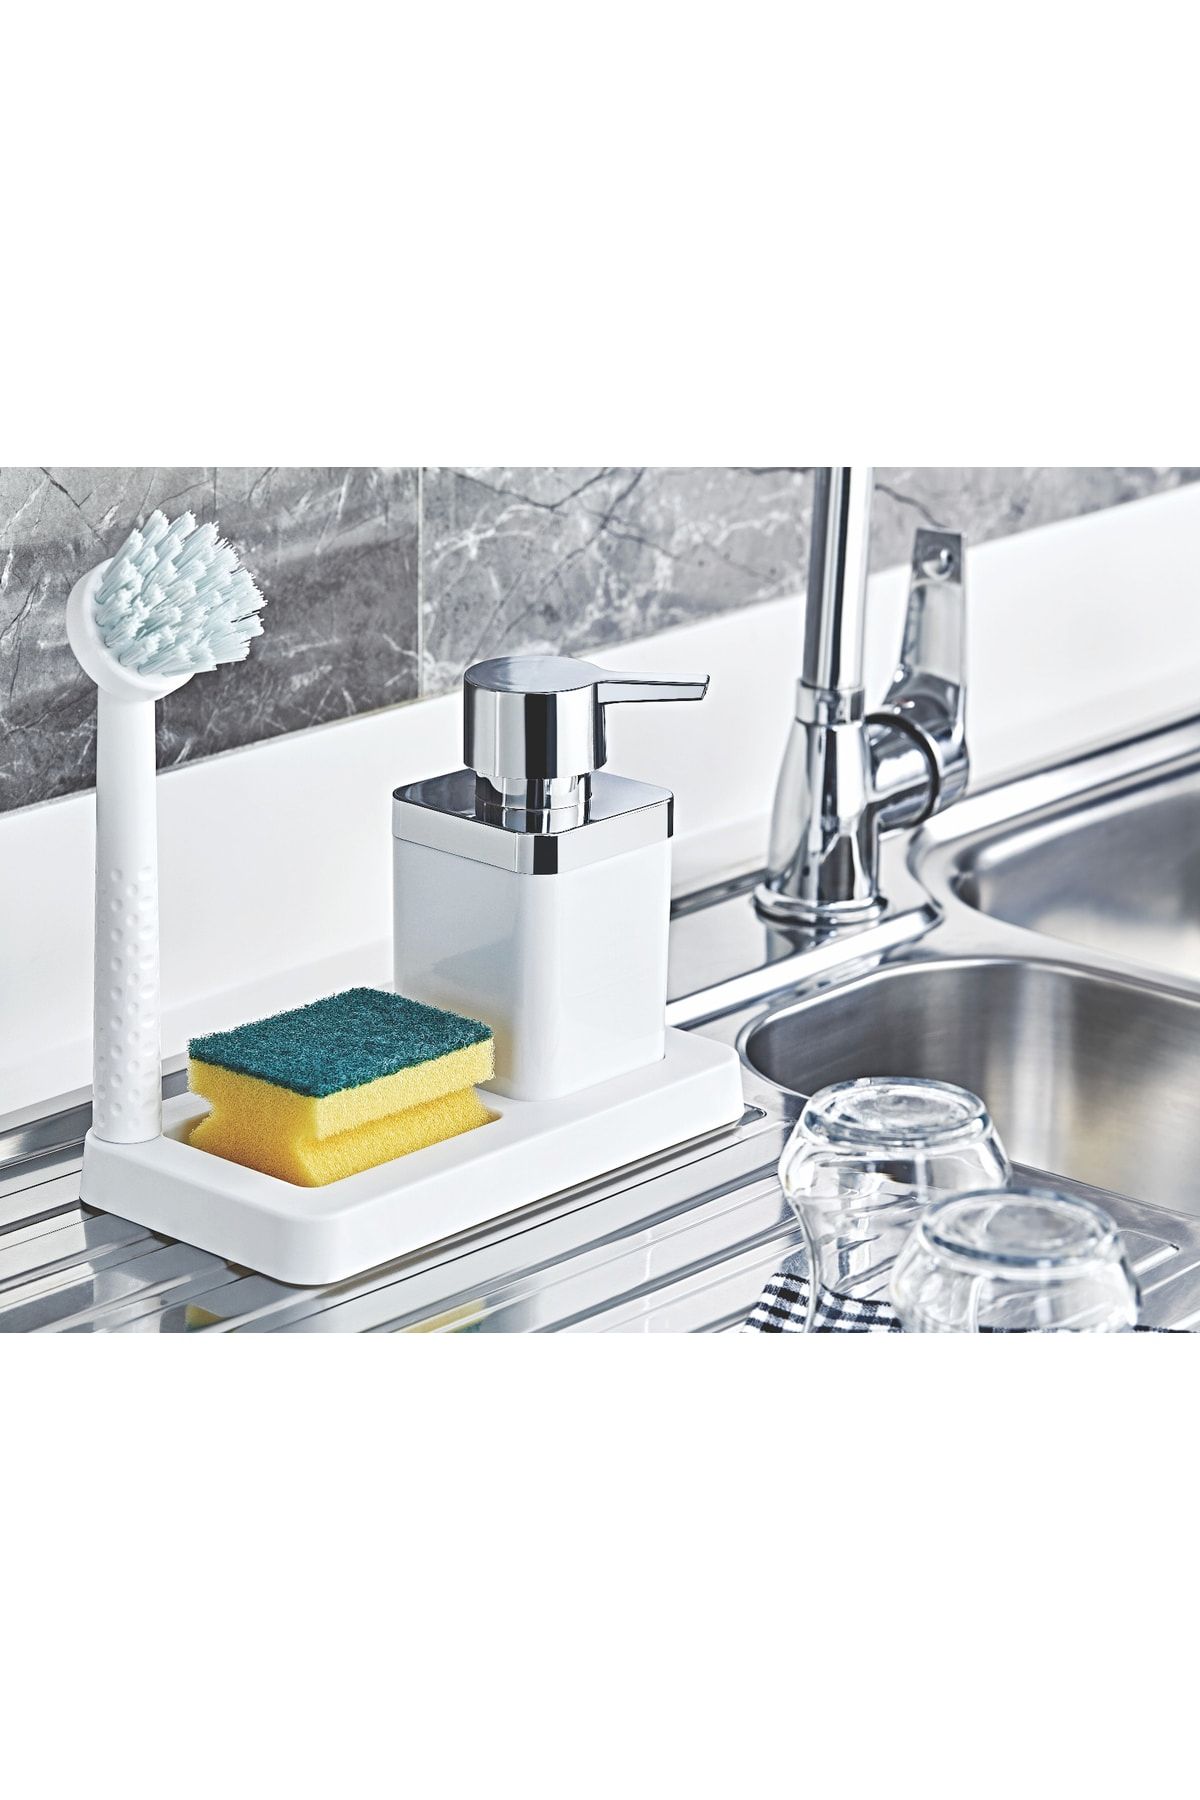 Muyika Design Muyika Fırçalı Sıvı Sabunluk Süngerlik Standlı Mutfak Banyo Seti Mtfk-01